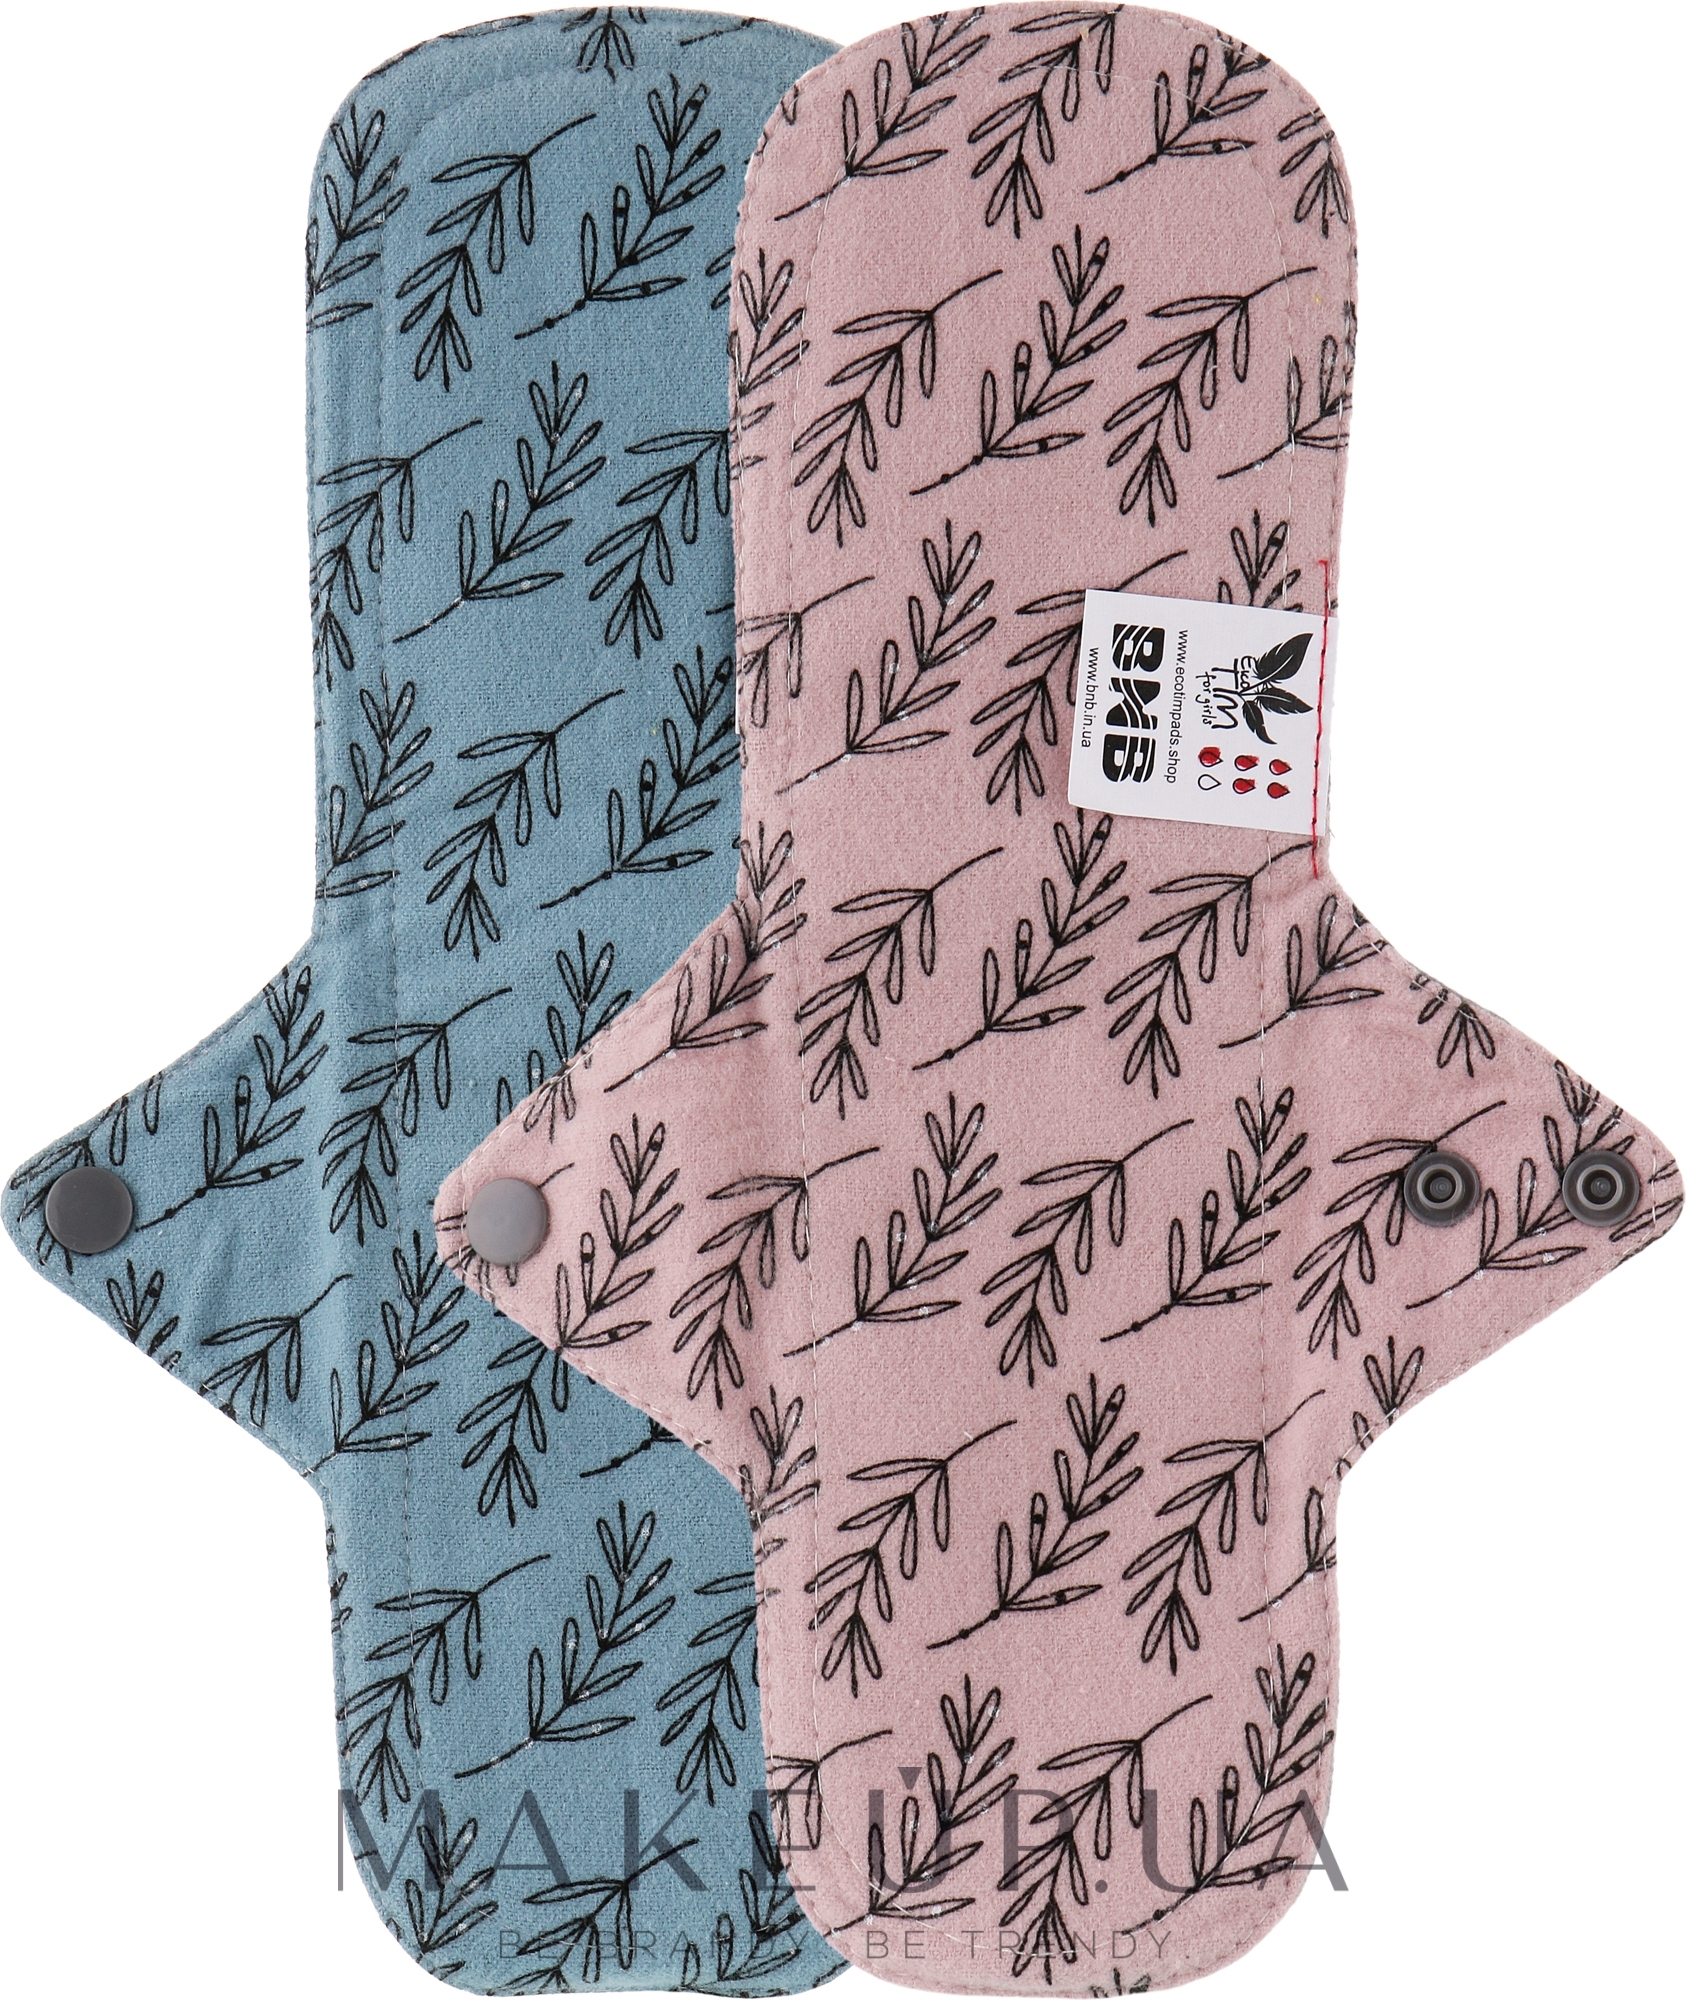 Многоразовая прокладка для менструации "Flannel", макси, 5 капли, листья акации на розовом, листья акации на серо-синем - Ecotim For Girls — фото 2шт